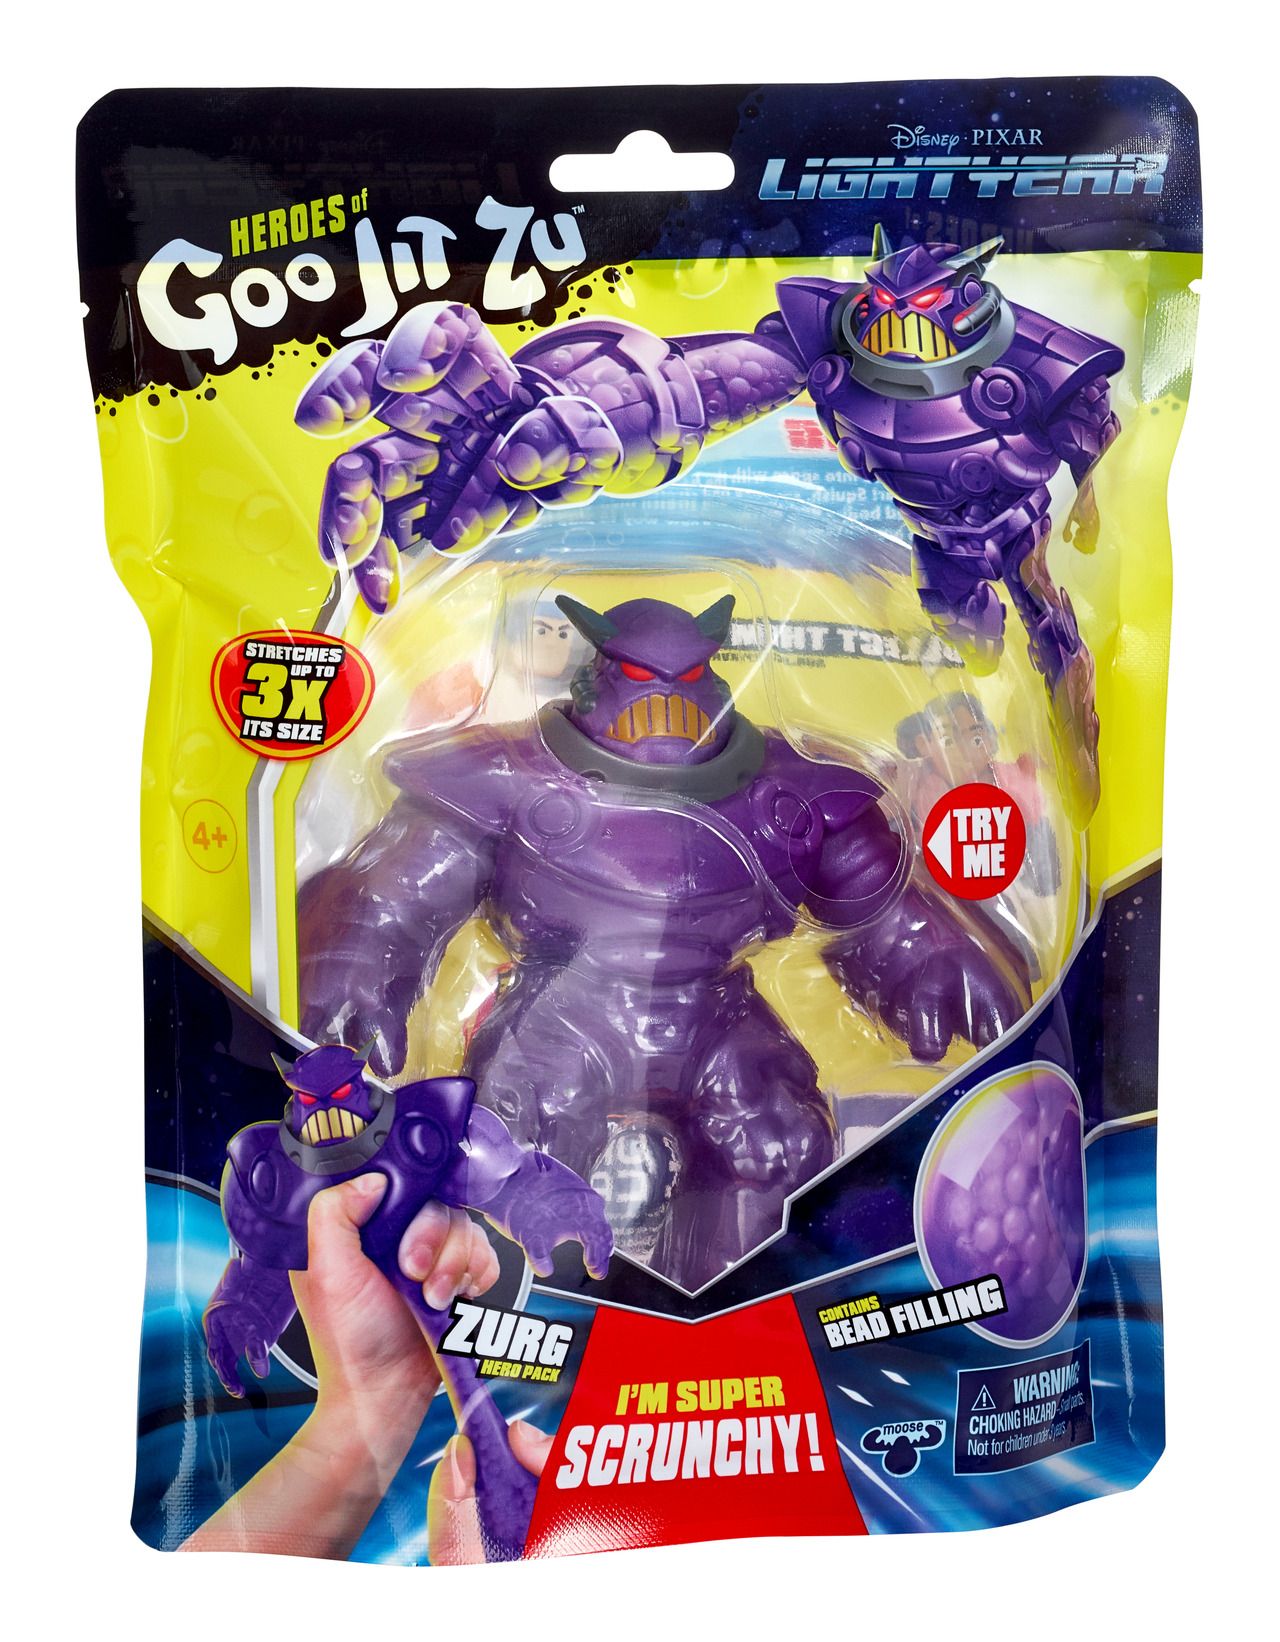 Disney Pixar Heroes of Goo Jit Zu Zurg Hero Pack Toy New Sealed